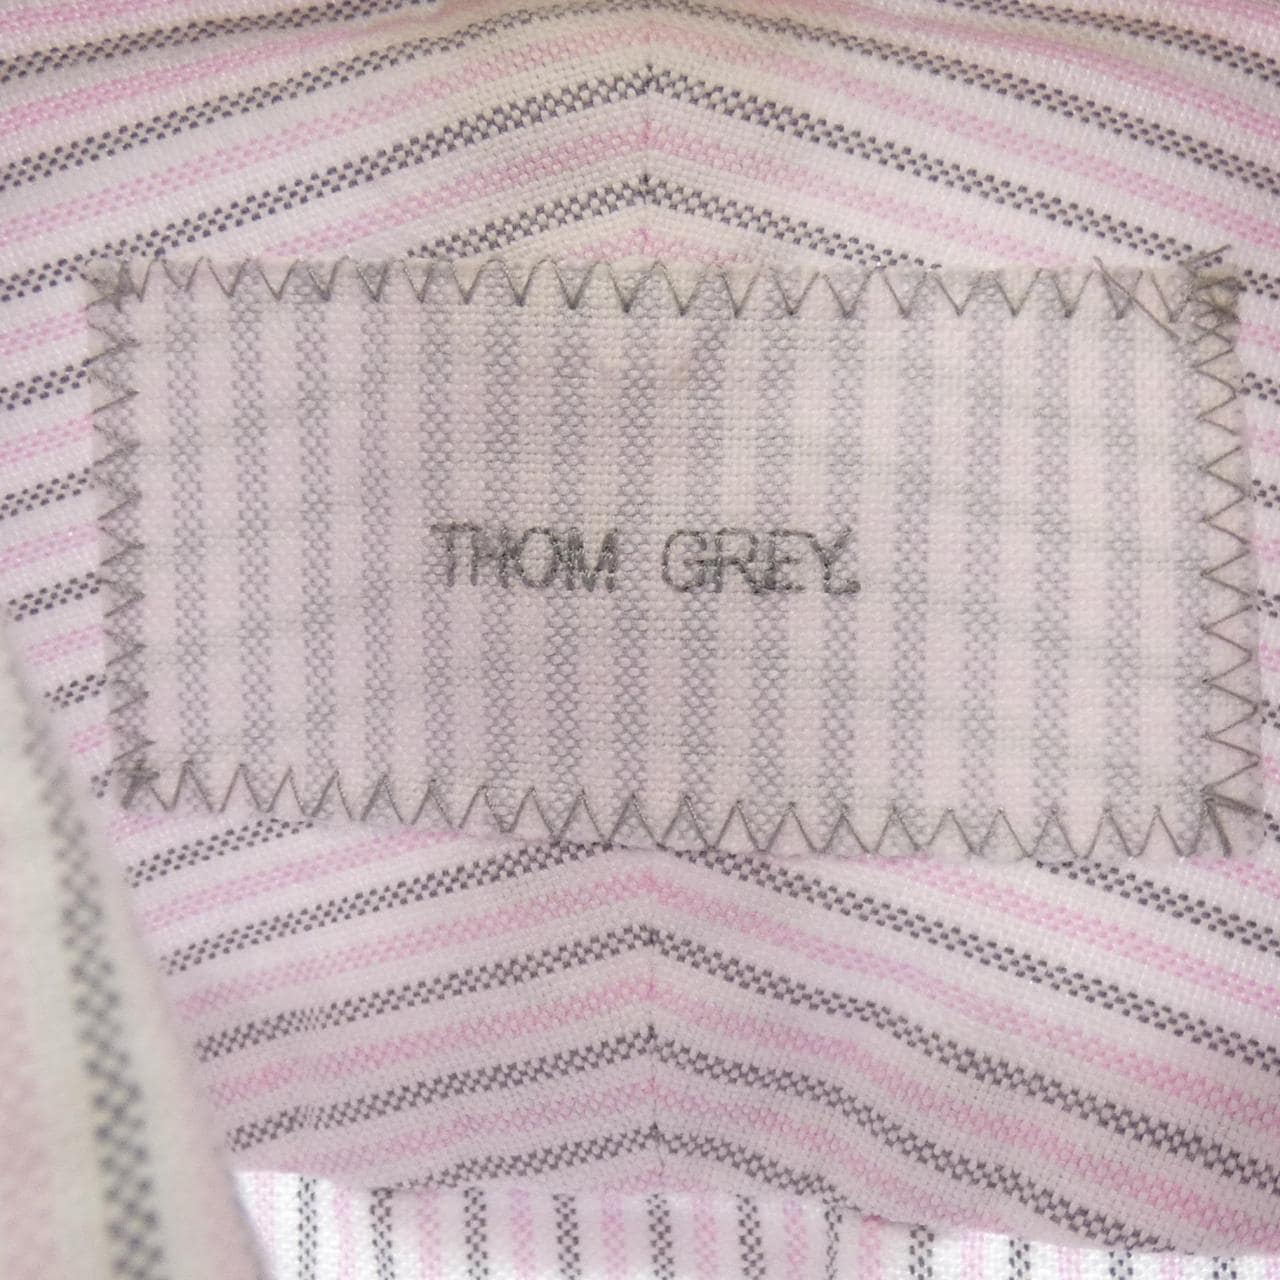 トムグレイ THOM GREY シャツ